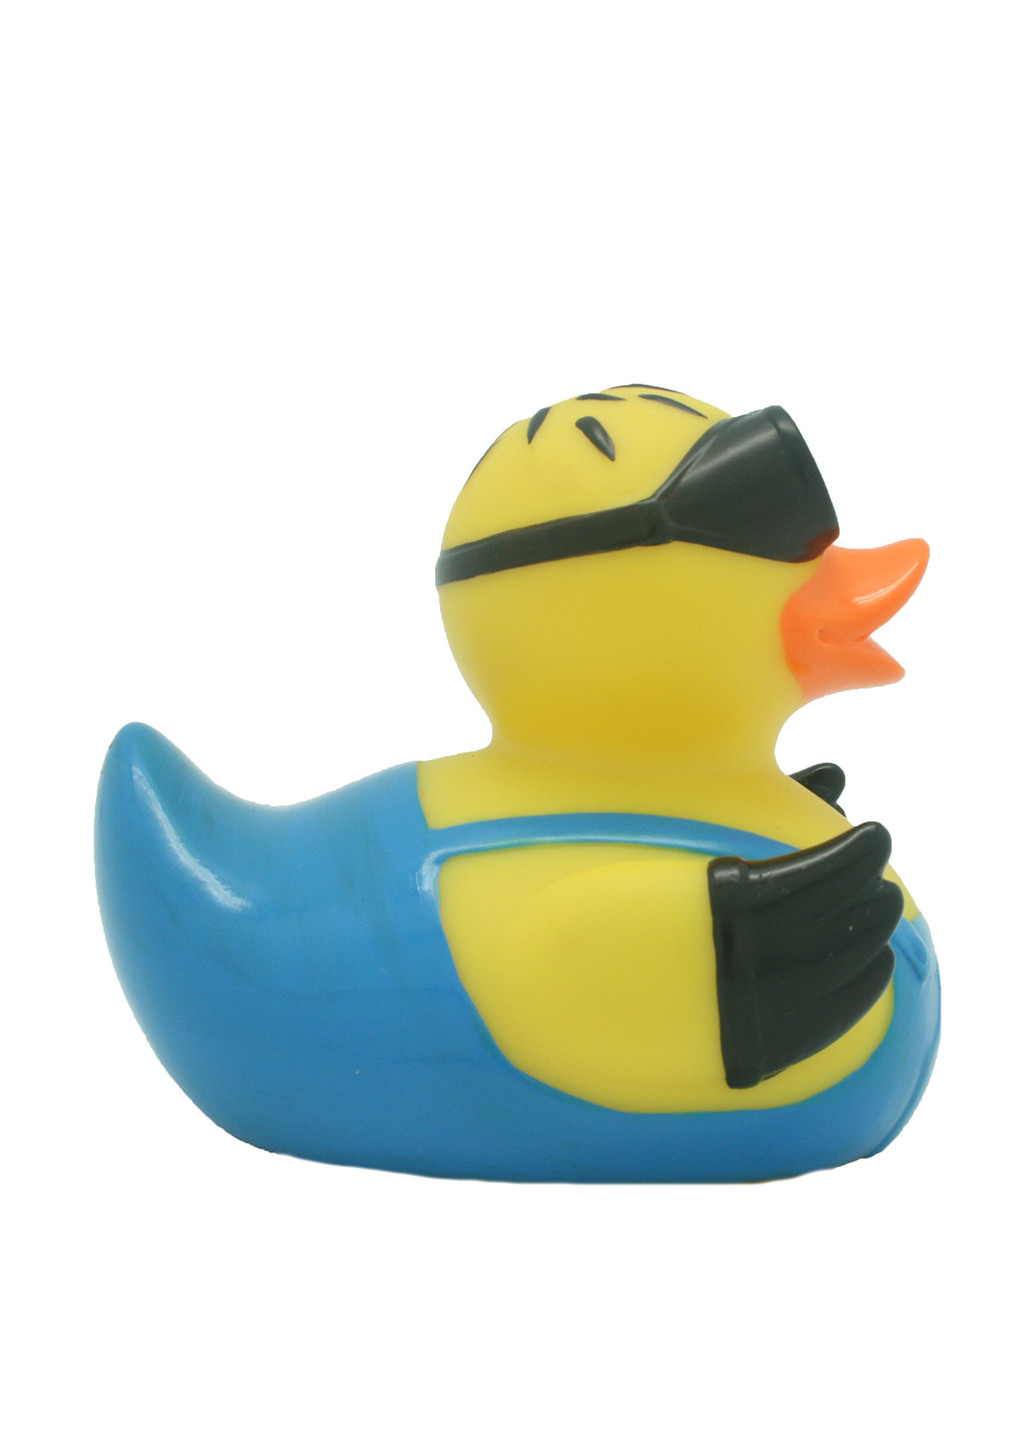 Игрушка для купания Утка, 8,5x8,5x7,5 см Funny Ducks (250618801)